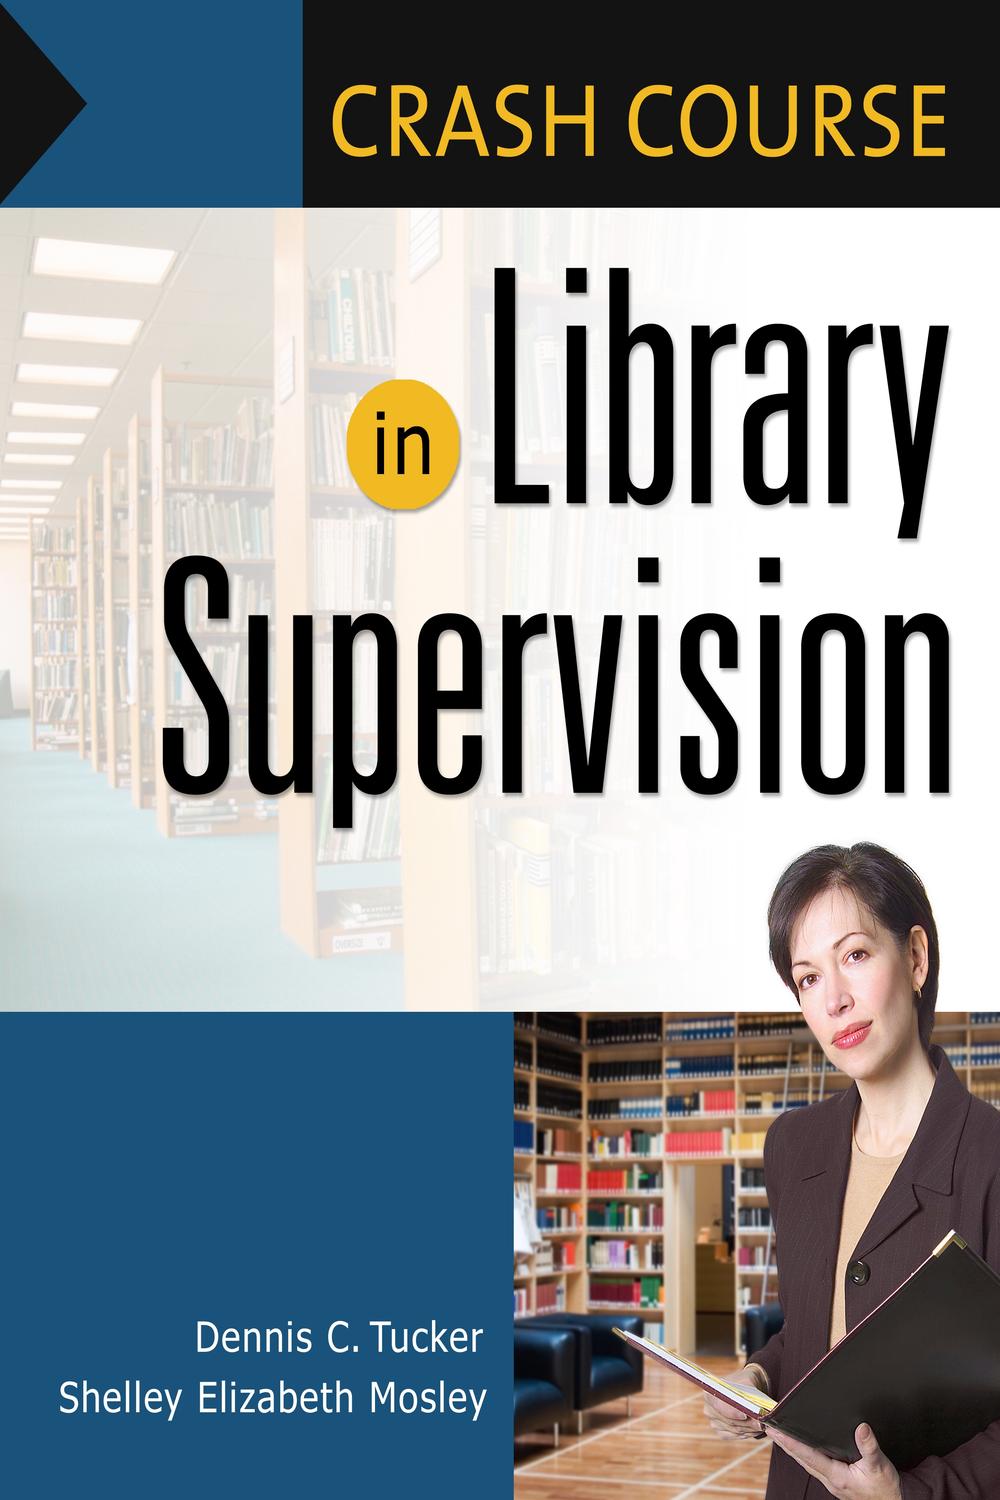 Crash Course in Library Supervision - Shelley Elizabeth Mosley, Dennis C. Tucker